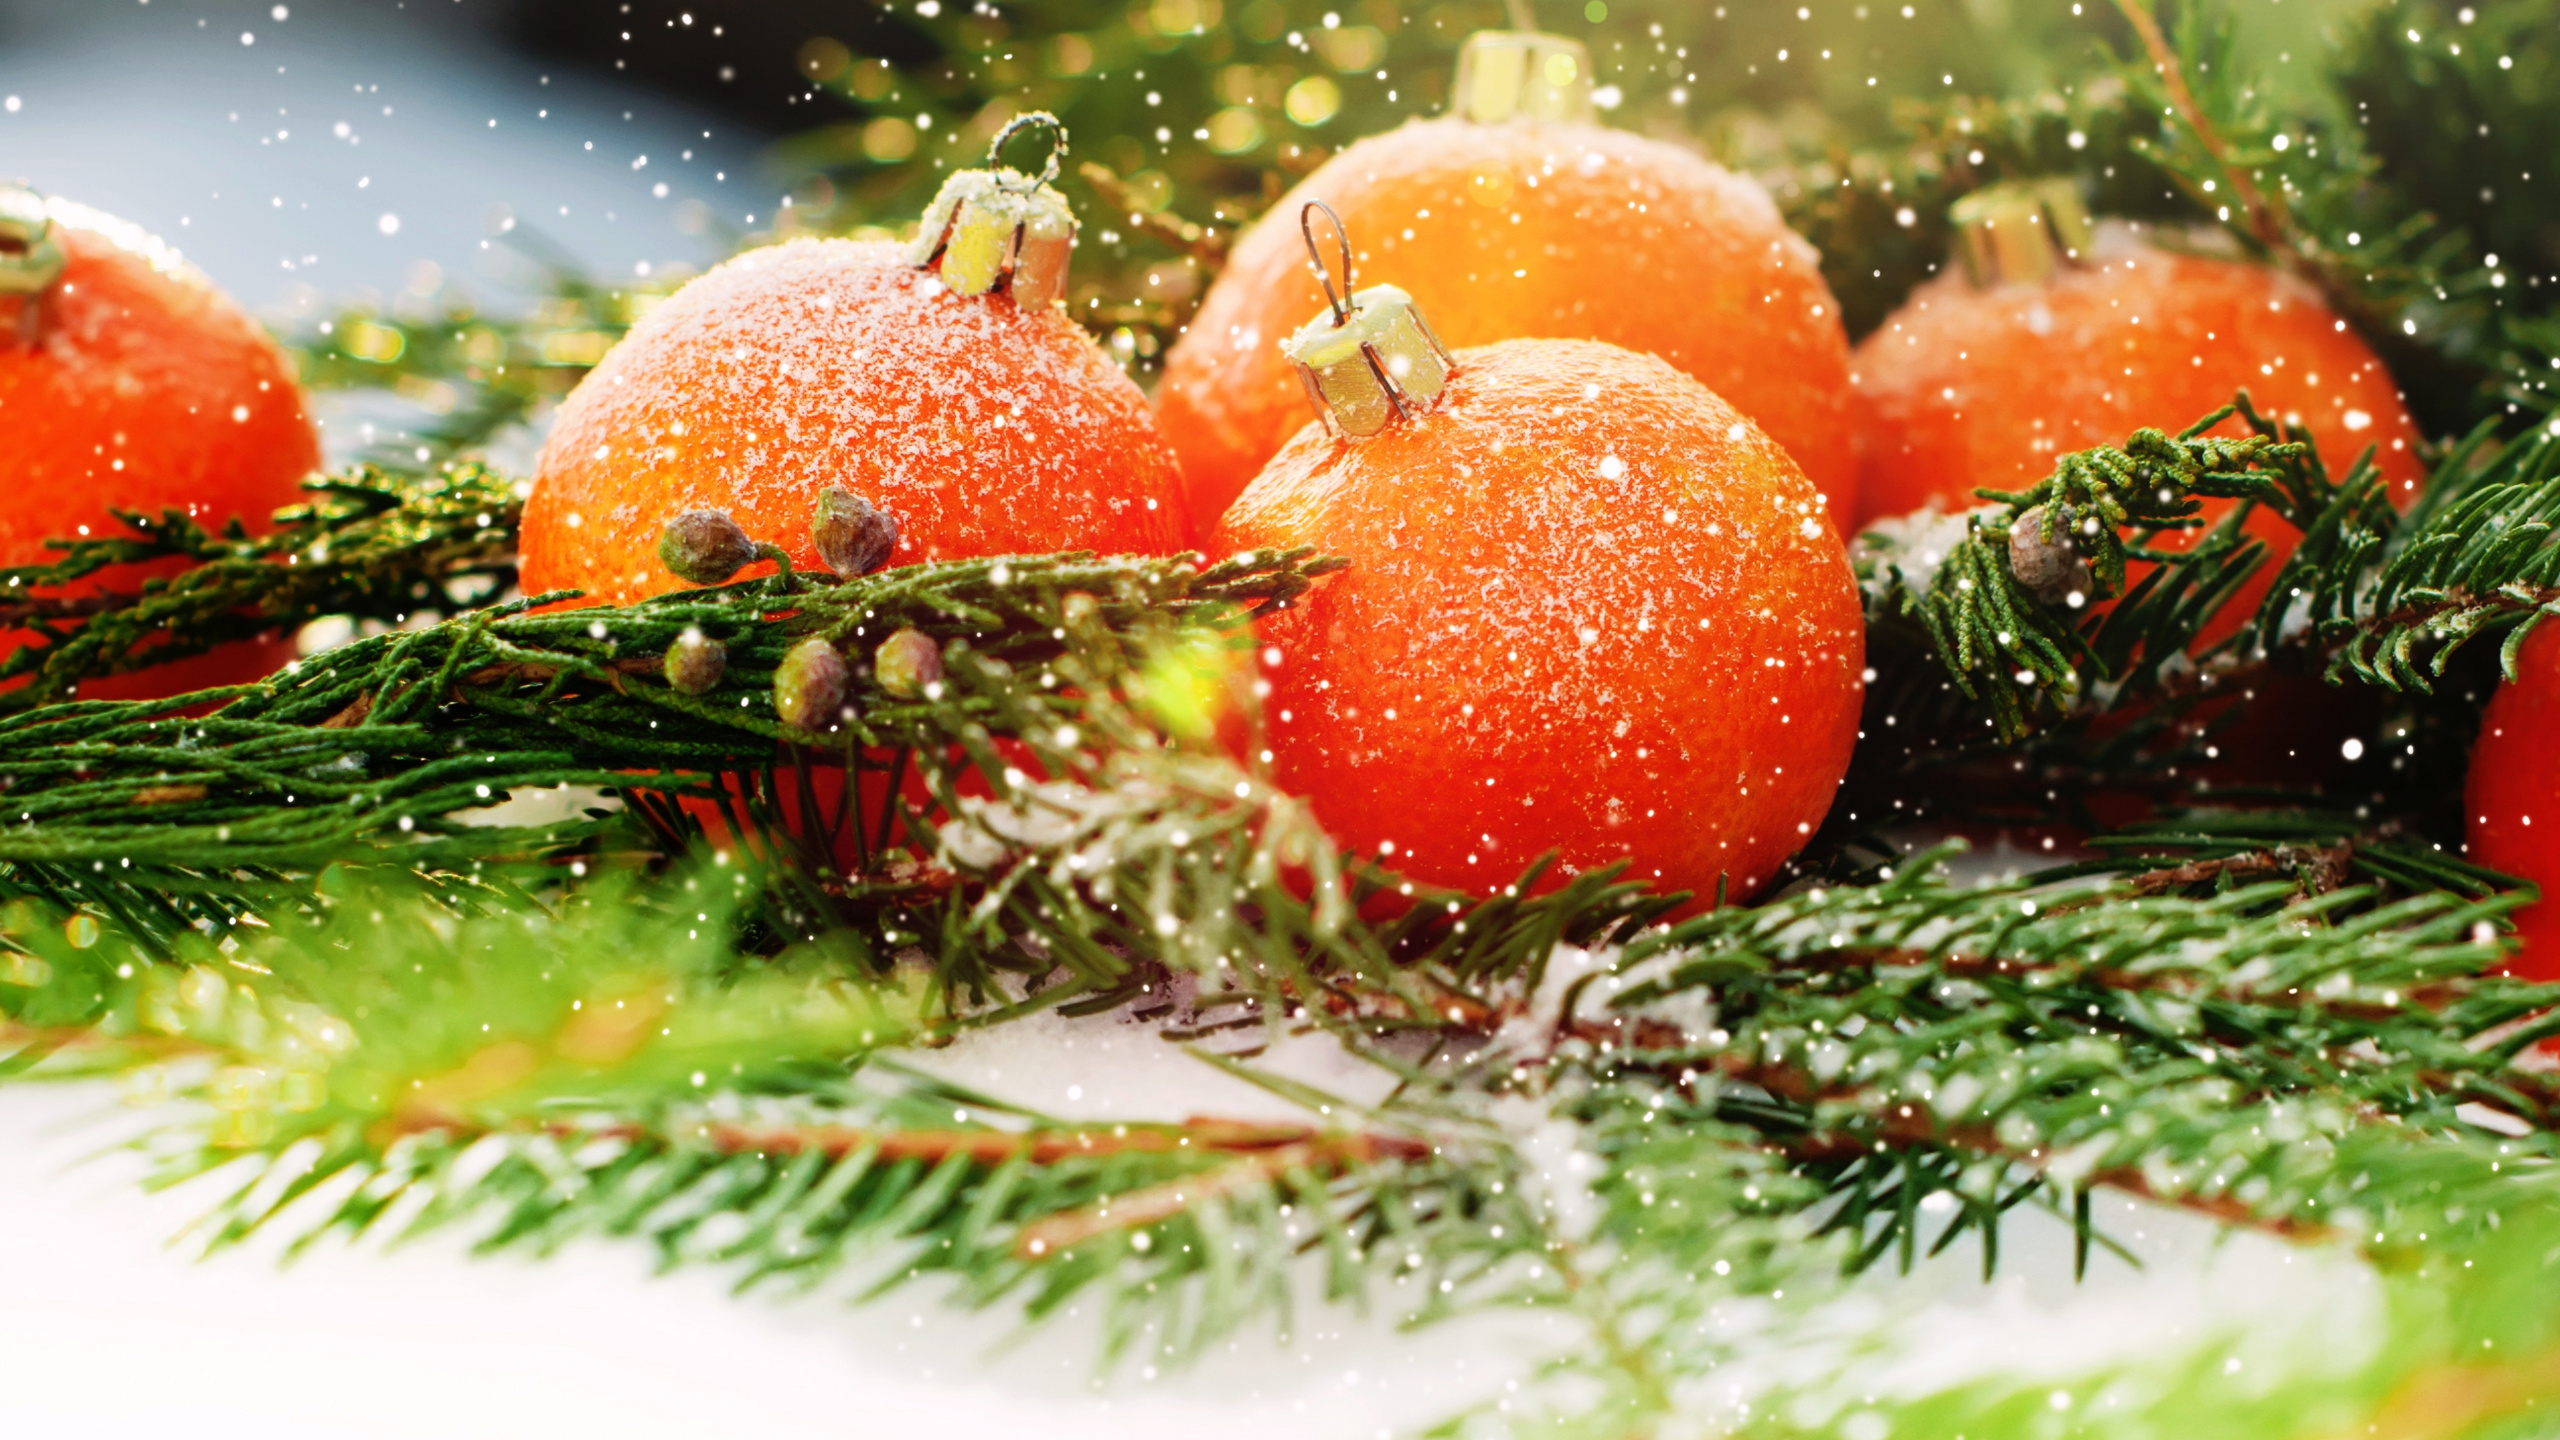 Weihnachten, Neujahr, Vegetarisches Essen, Lebensmittel, Natürliche Lebensmittel. Wallpaper in 2560x1440 Resolution